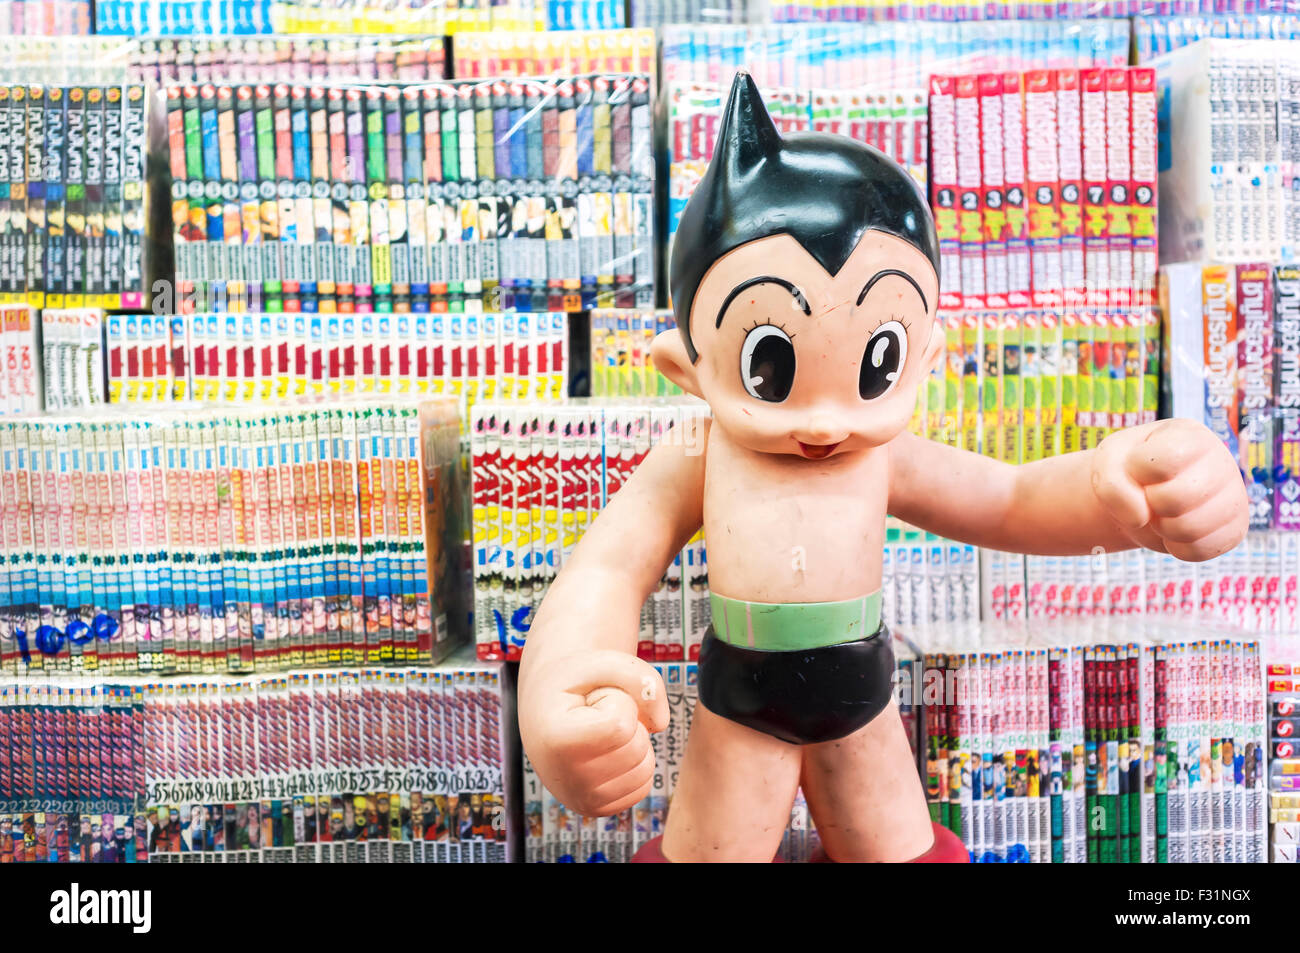 BANGKOK, TAILANDIA - marzo de 2015 - Un modelo de la manga de carácter "Astro Boy" está delante de una selección de libros en el mercado de Chatuchak, Bangkok Foto de stock